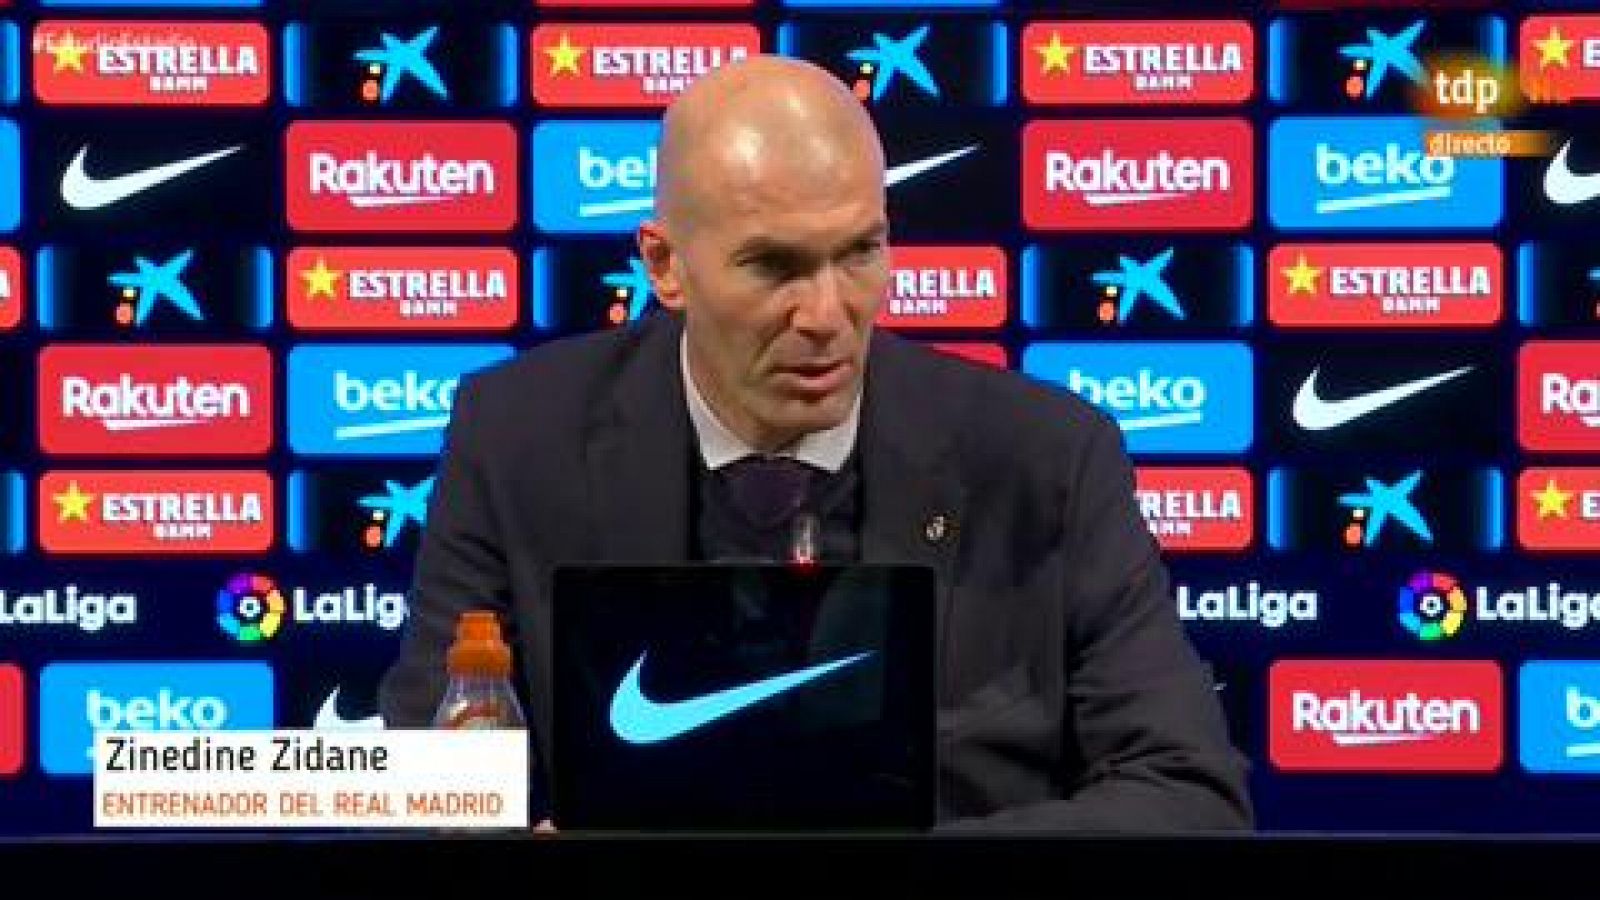 El entrenador del Real Madrid ha manifestado que su equipo ha hecho méritos para ganar el Clásico pero no ha materializado las ocasiones de gol, "esto es el fútbol".